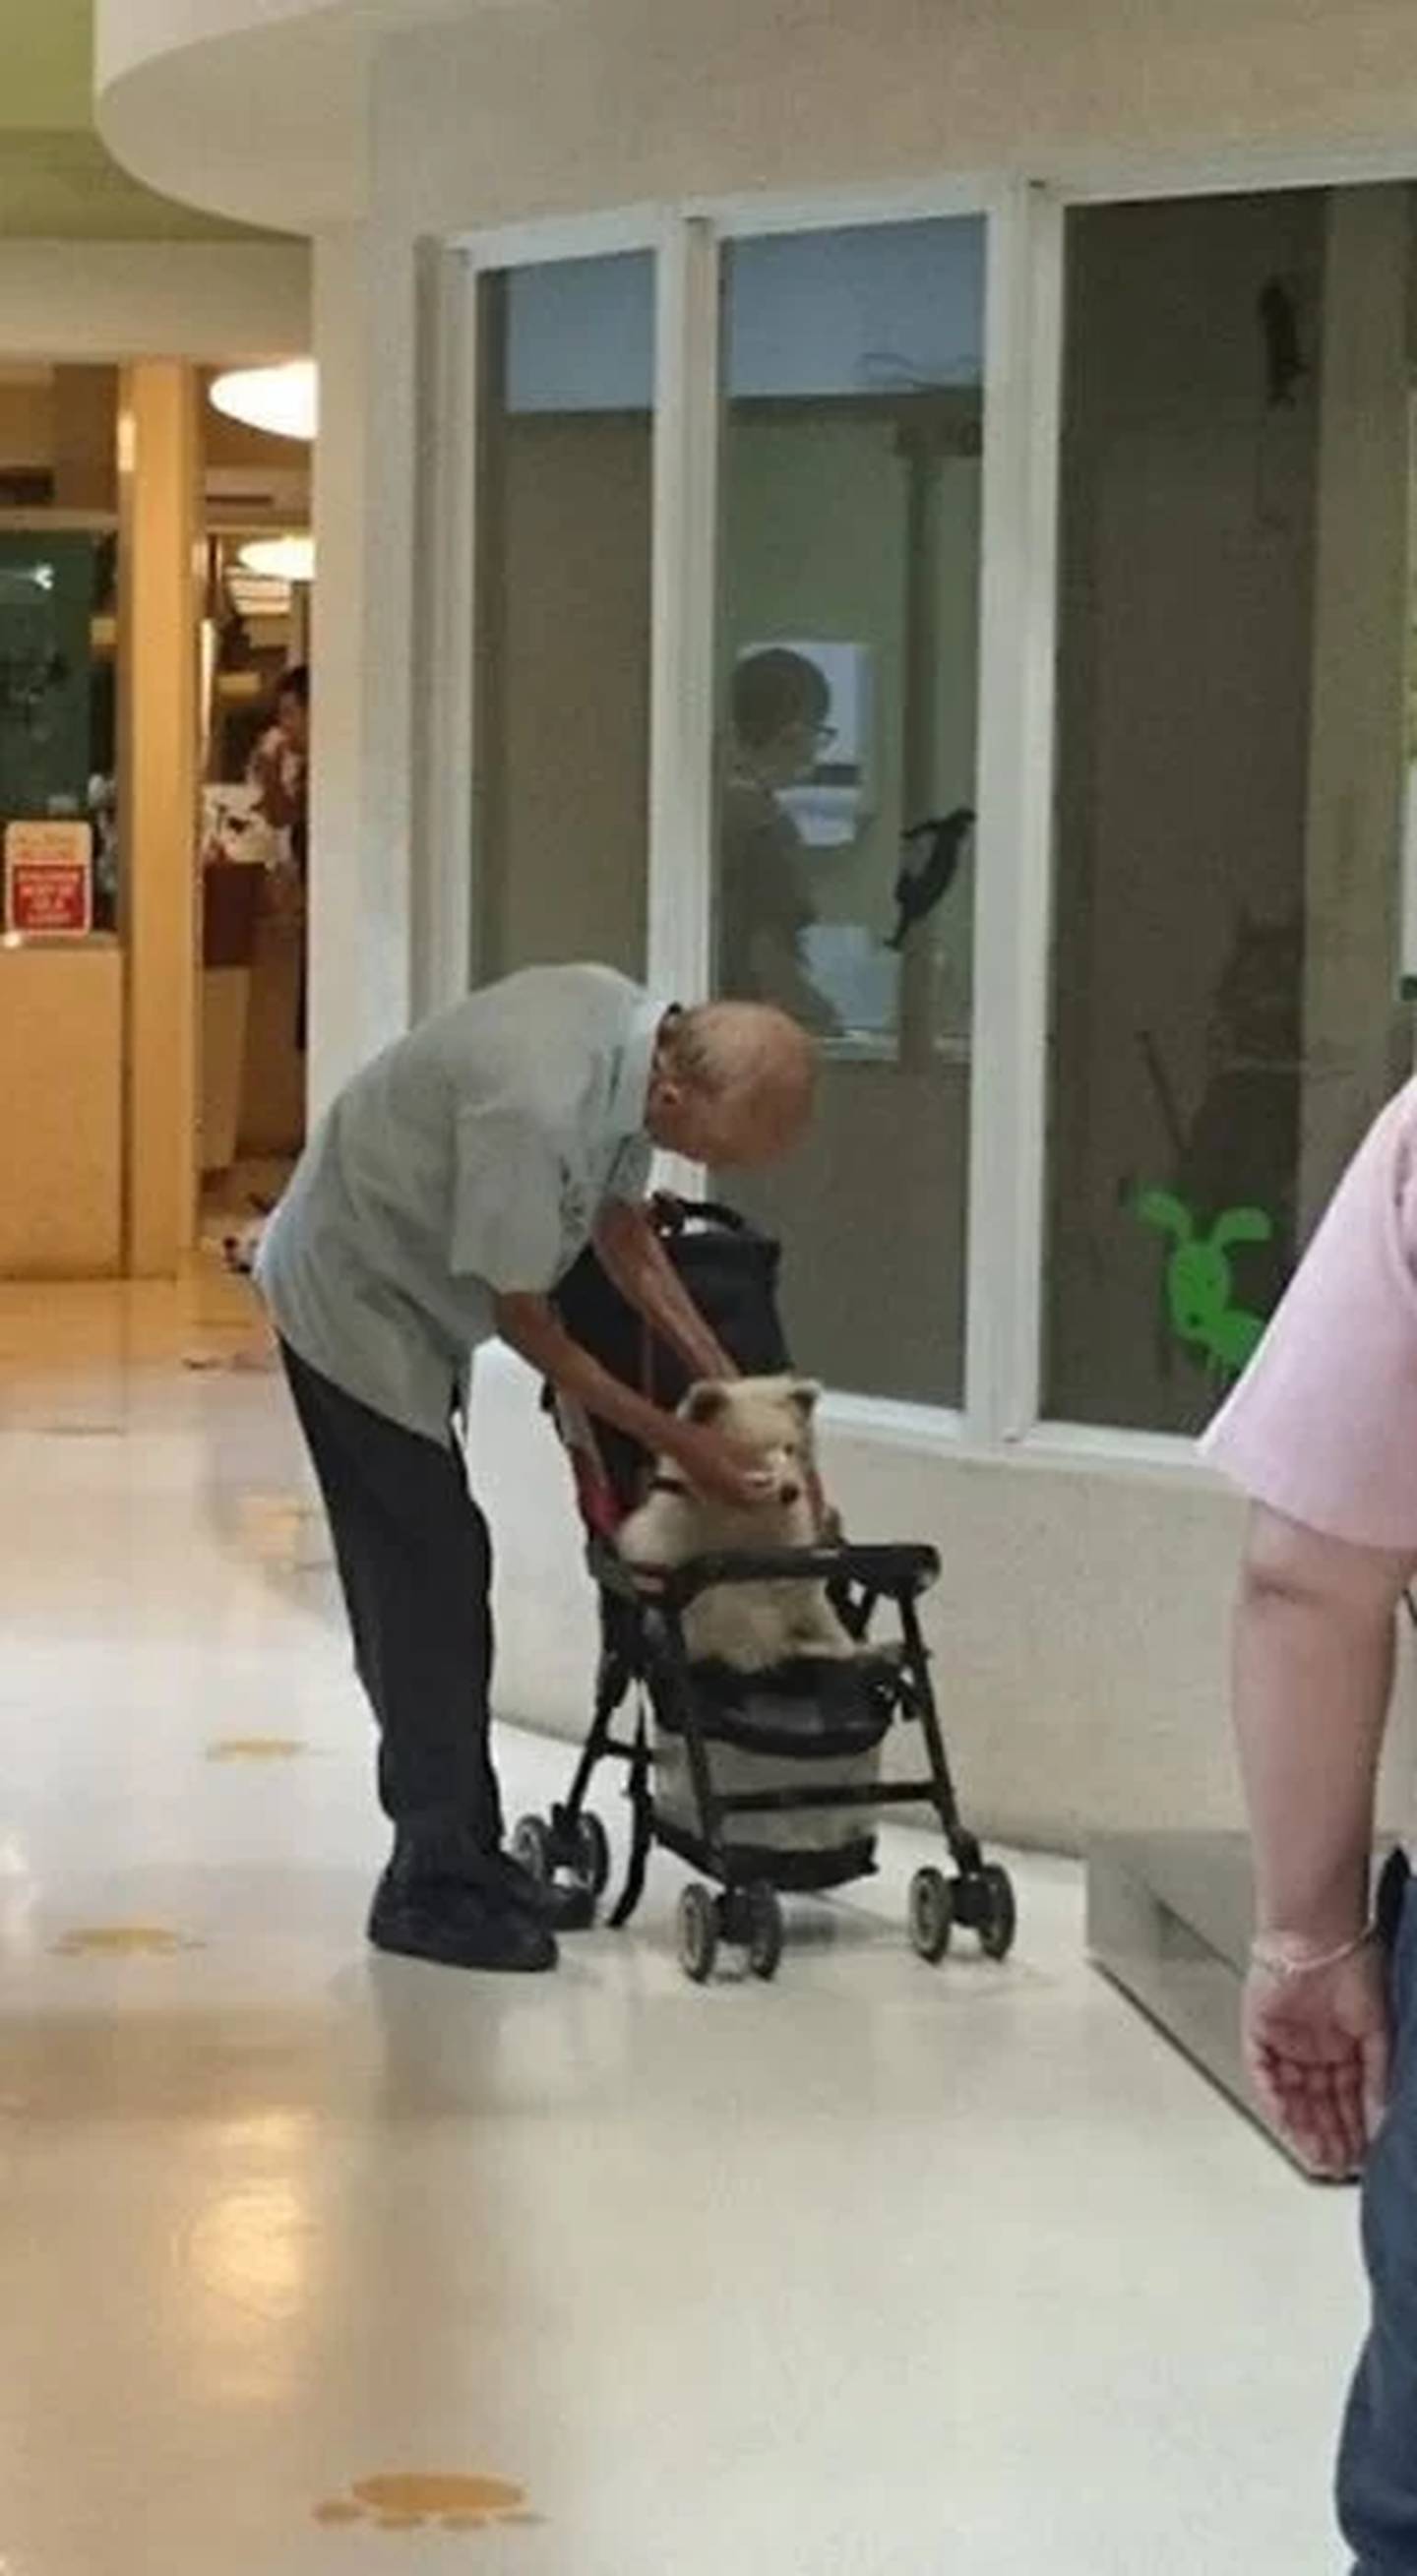 Abuelito lleva en carriola a su perrito, para visita al veterinario.